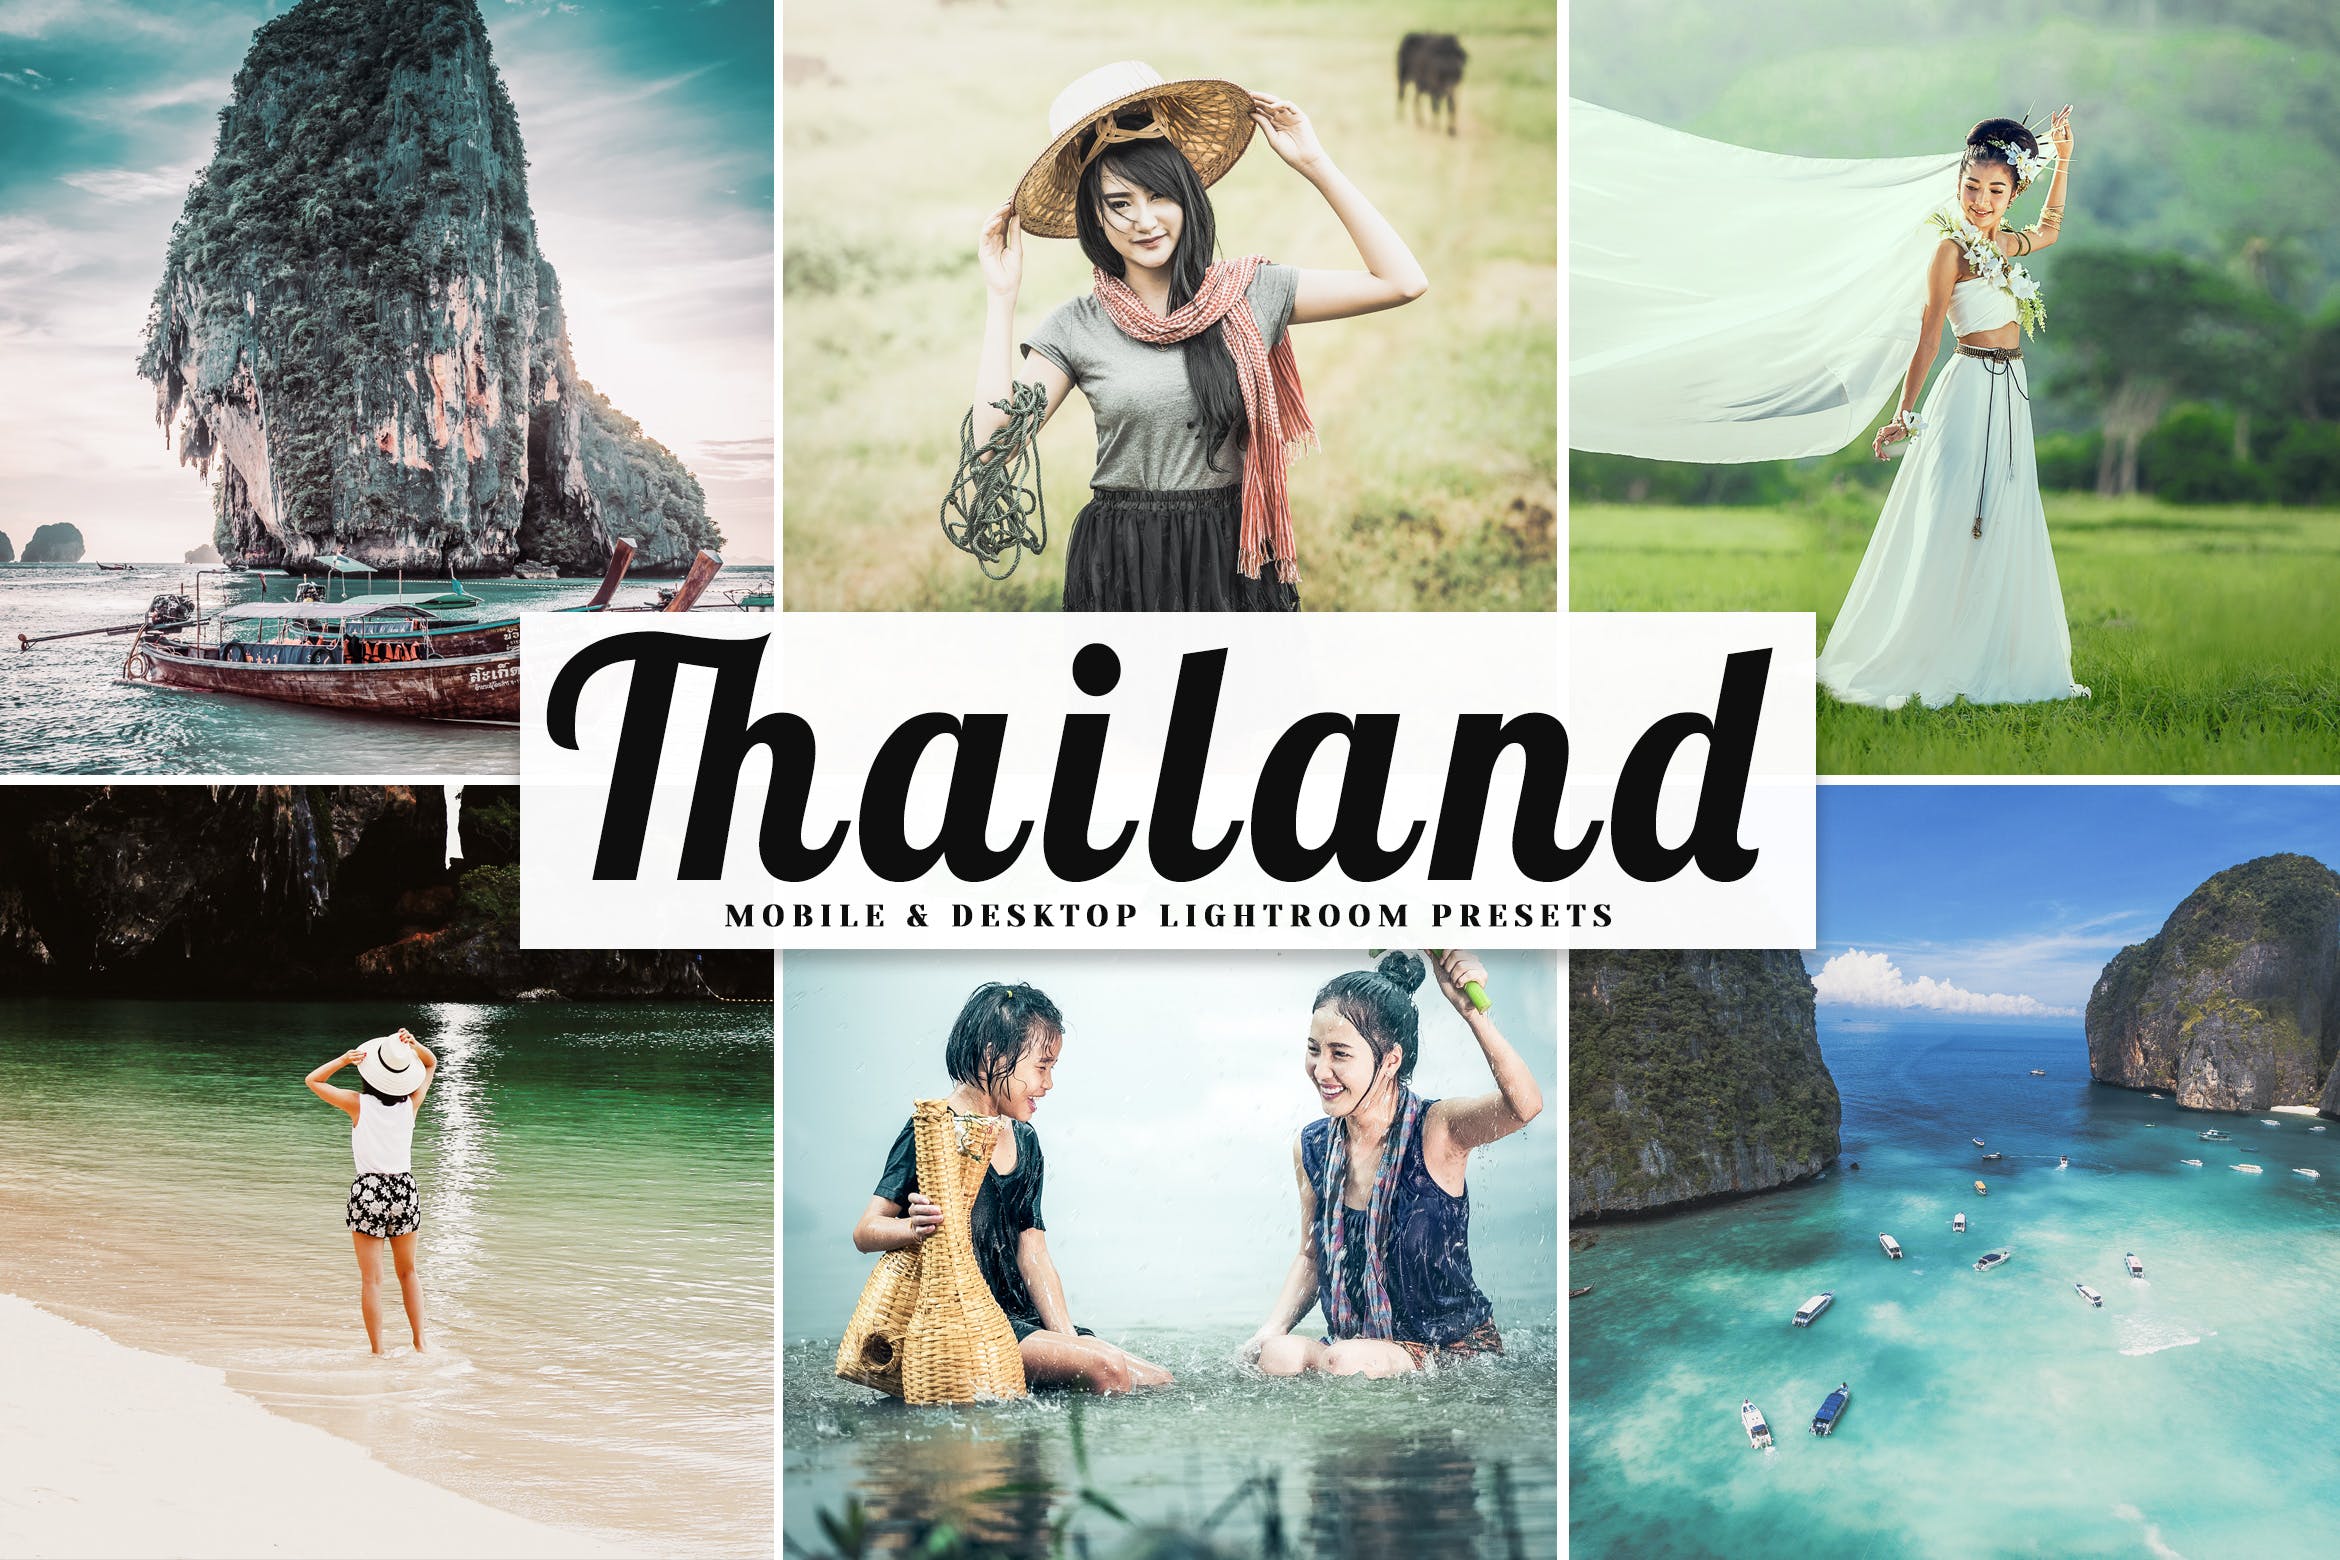 哑光暖色调的乡村摄影LR预设下载 Thailand Mobile & Desktop Lightroom Presets插图